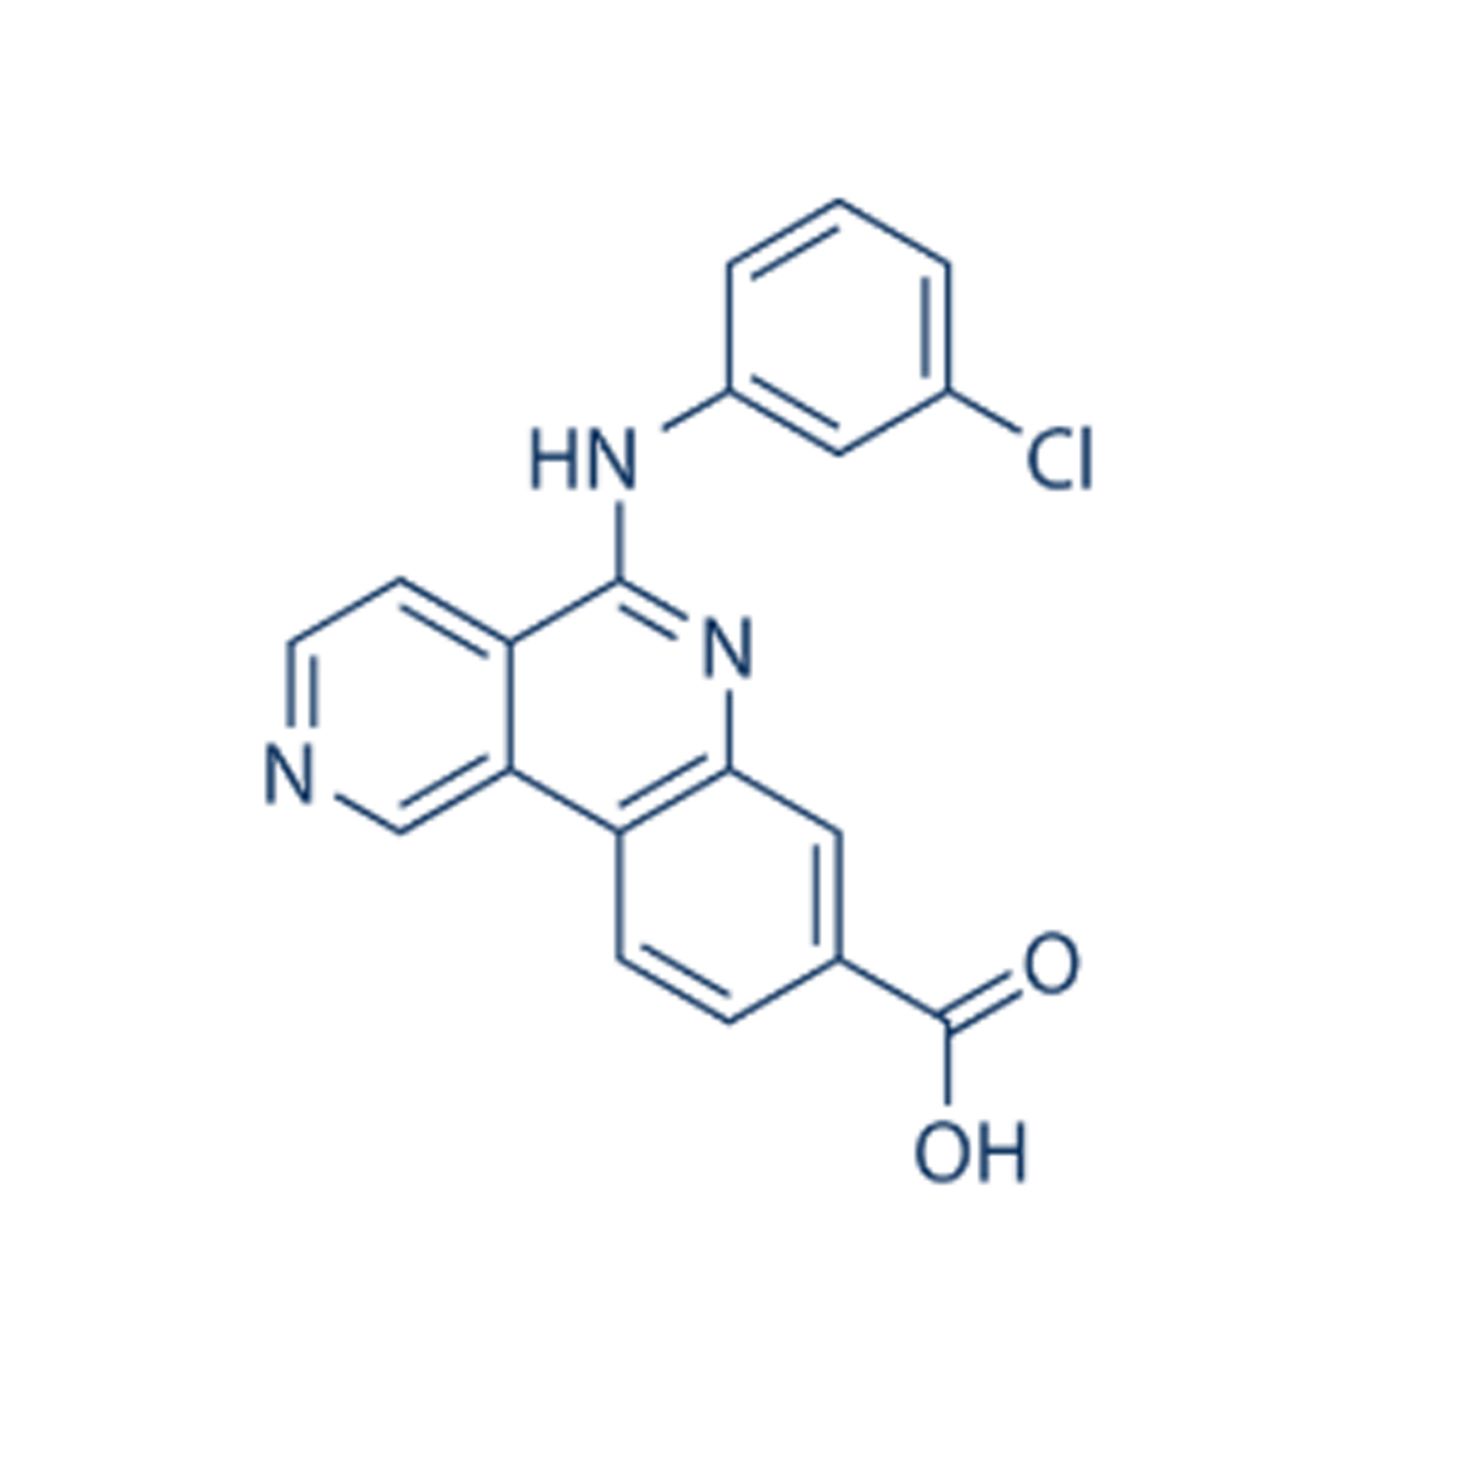 Selleck S2248 Silmitasertib (CX- 4945)，选择性CK2(casein kinase 2)抑制剂